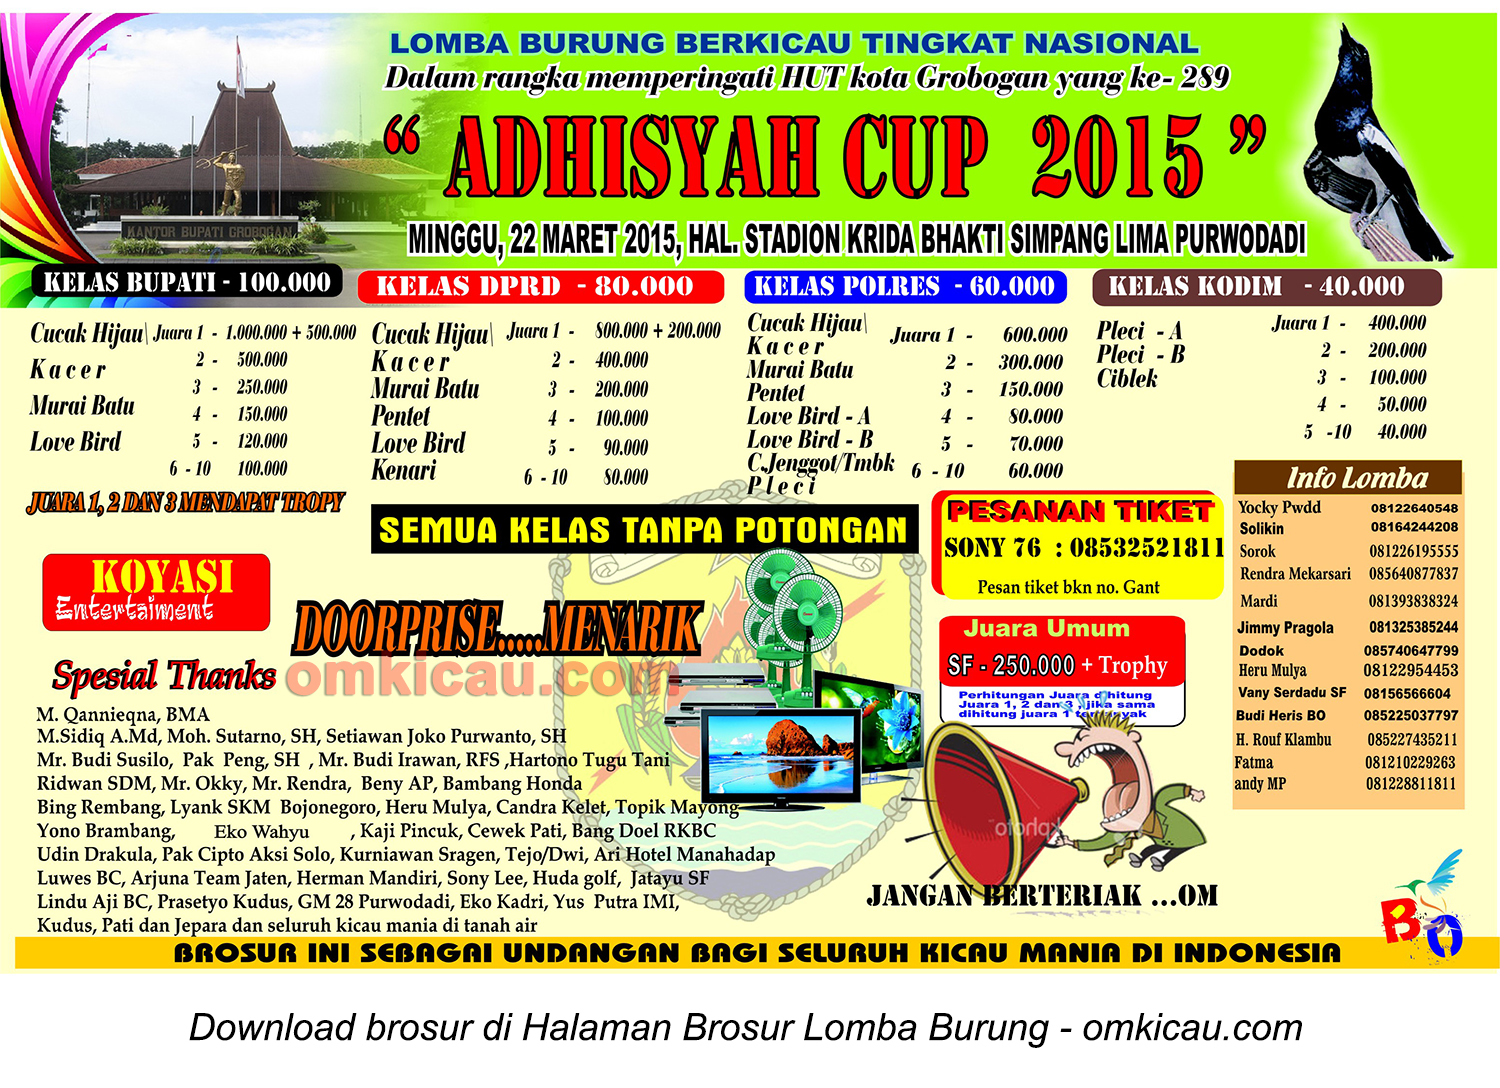 Brosur Lomba Burung Berkicau Adhisyah Cup, Purwodadi, 22 Maret 2015